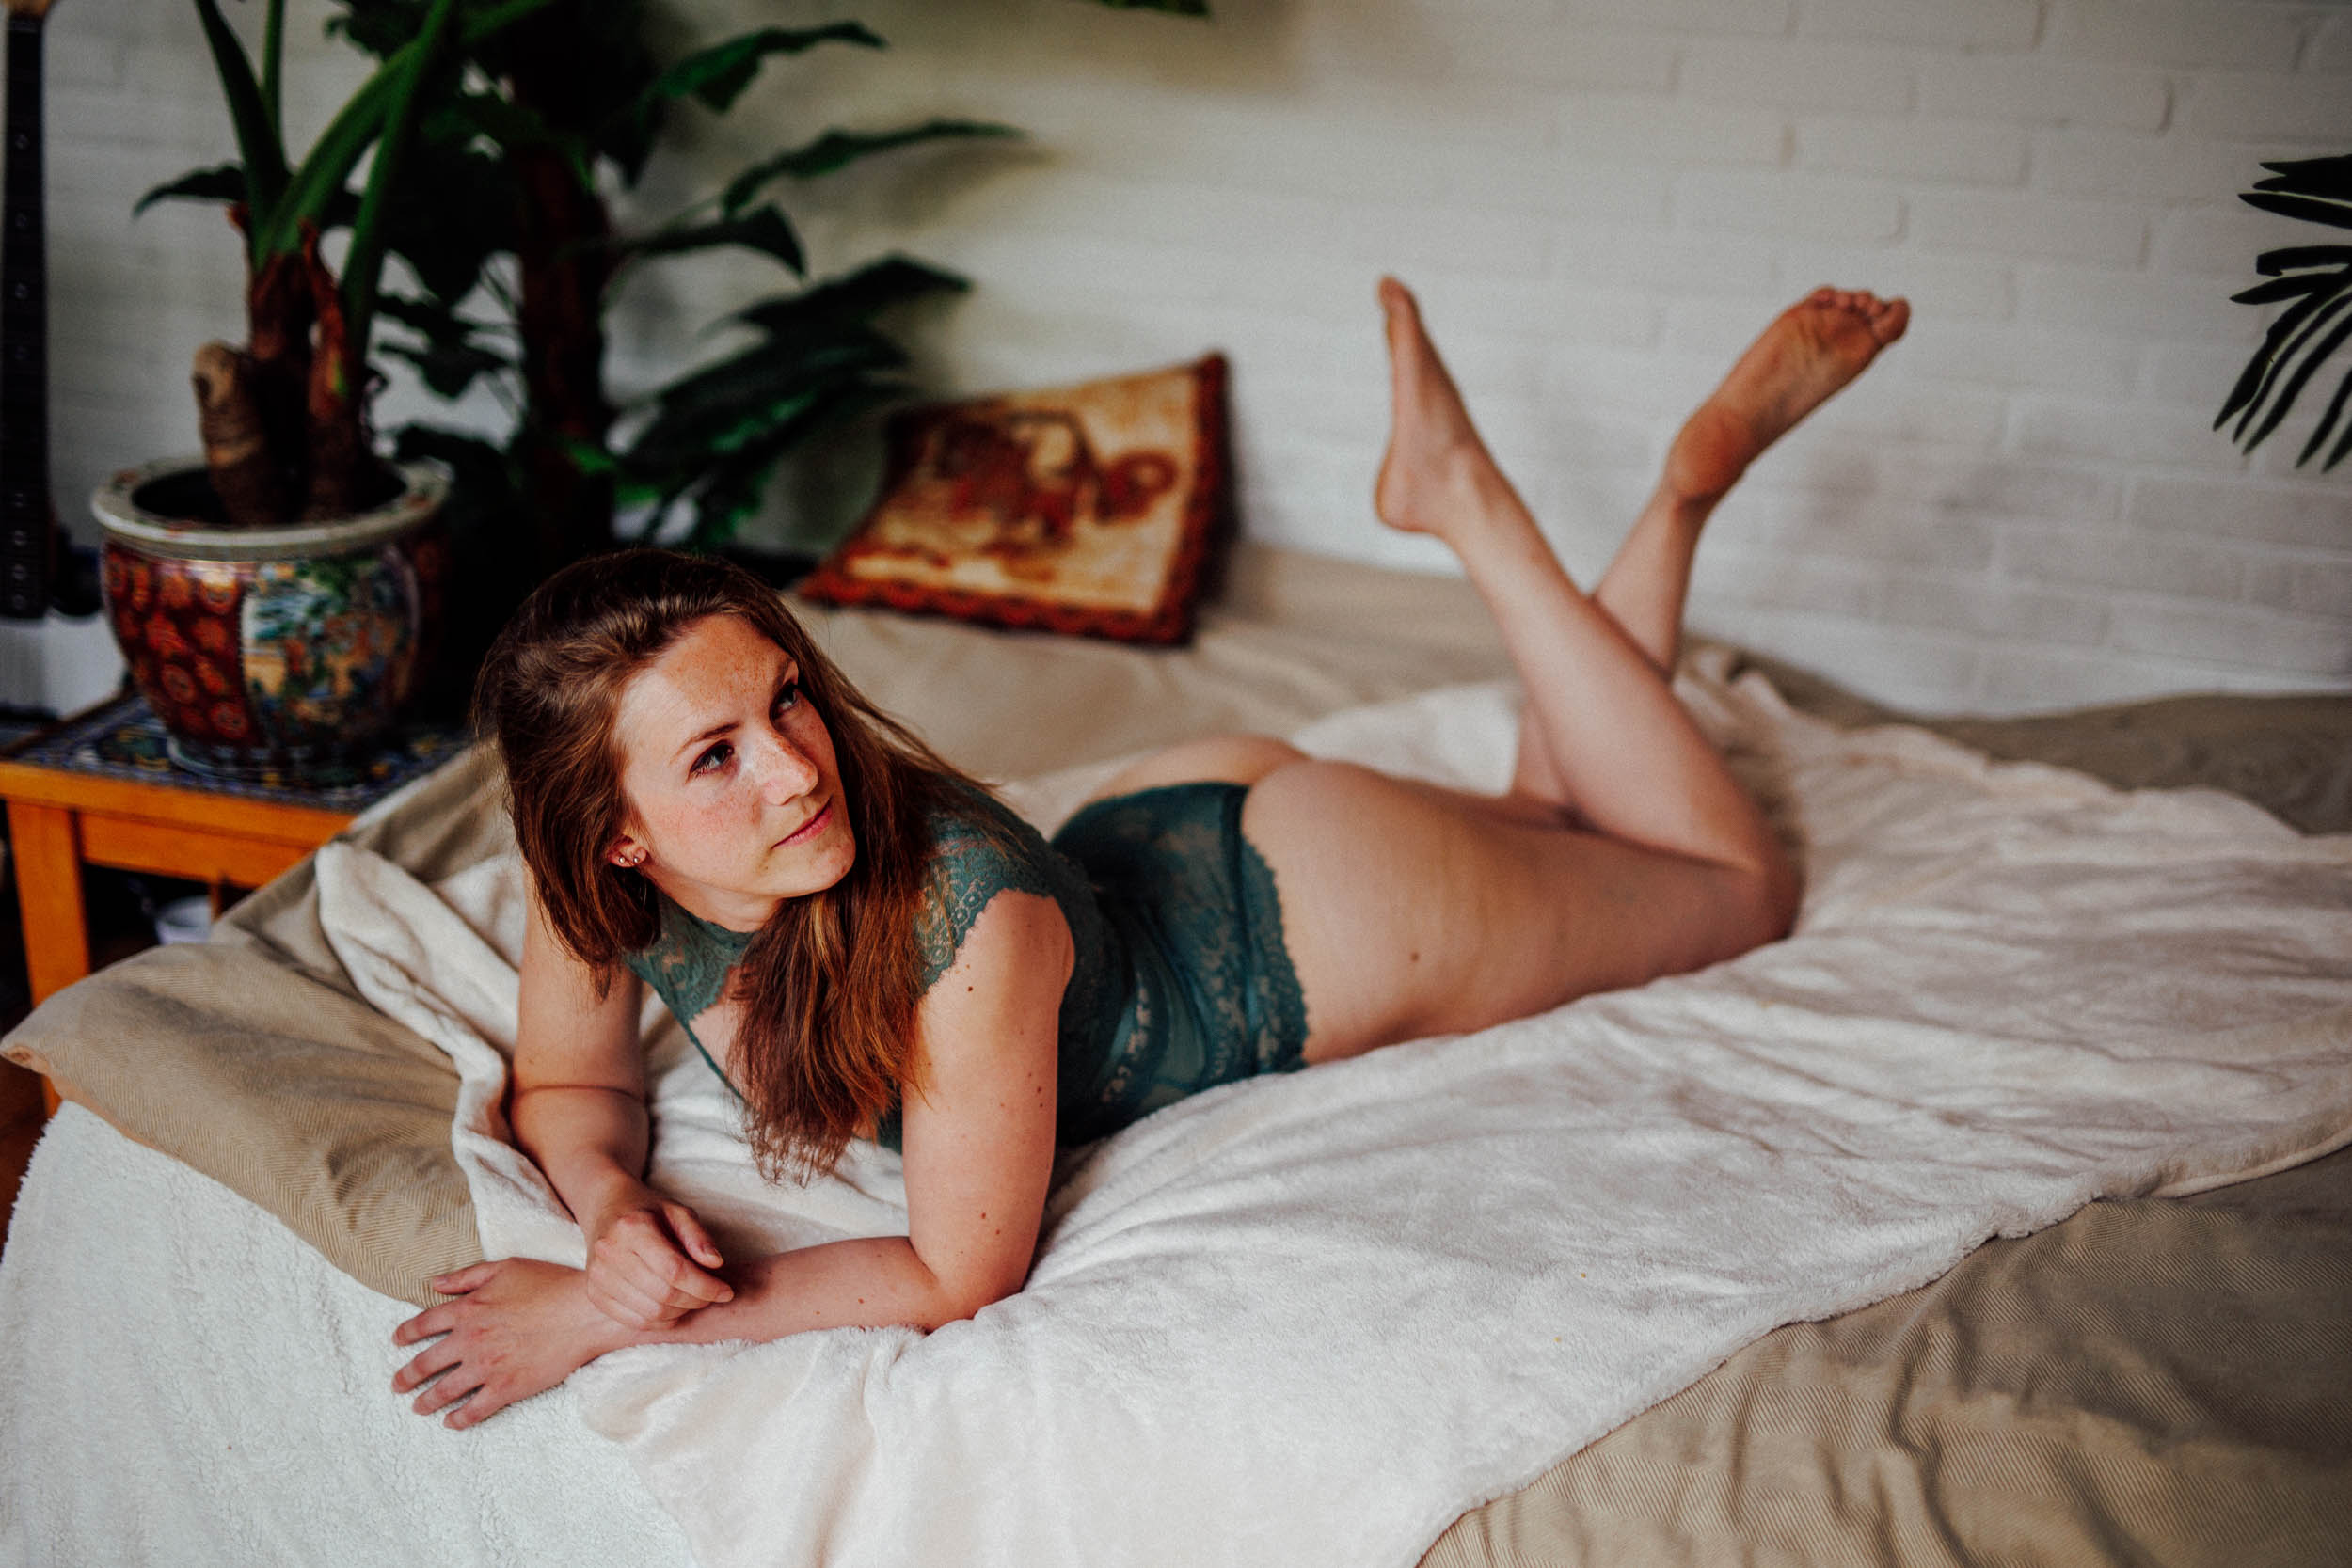 Een vrouw in een groen kanten lingeriesetje ligt op haar buik op een bed, ondersteund door kussens. De scène, perfect voor boudoirfoto's, bevat planten en een bijzettafel op de achtergrond.